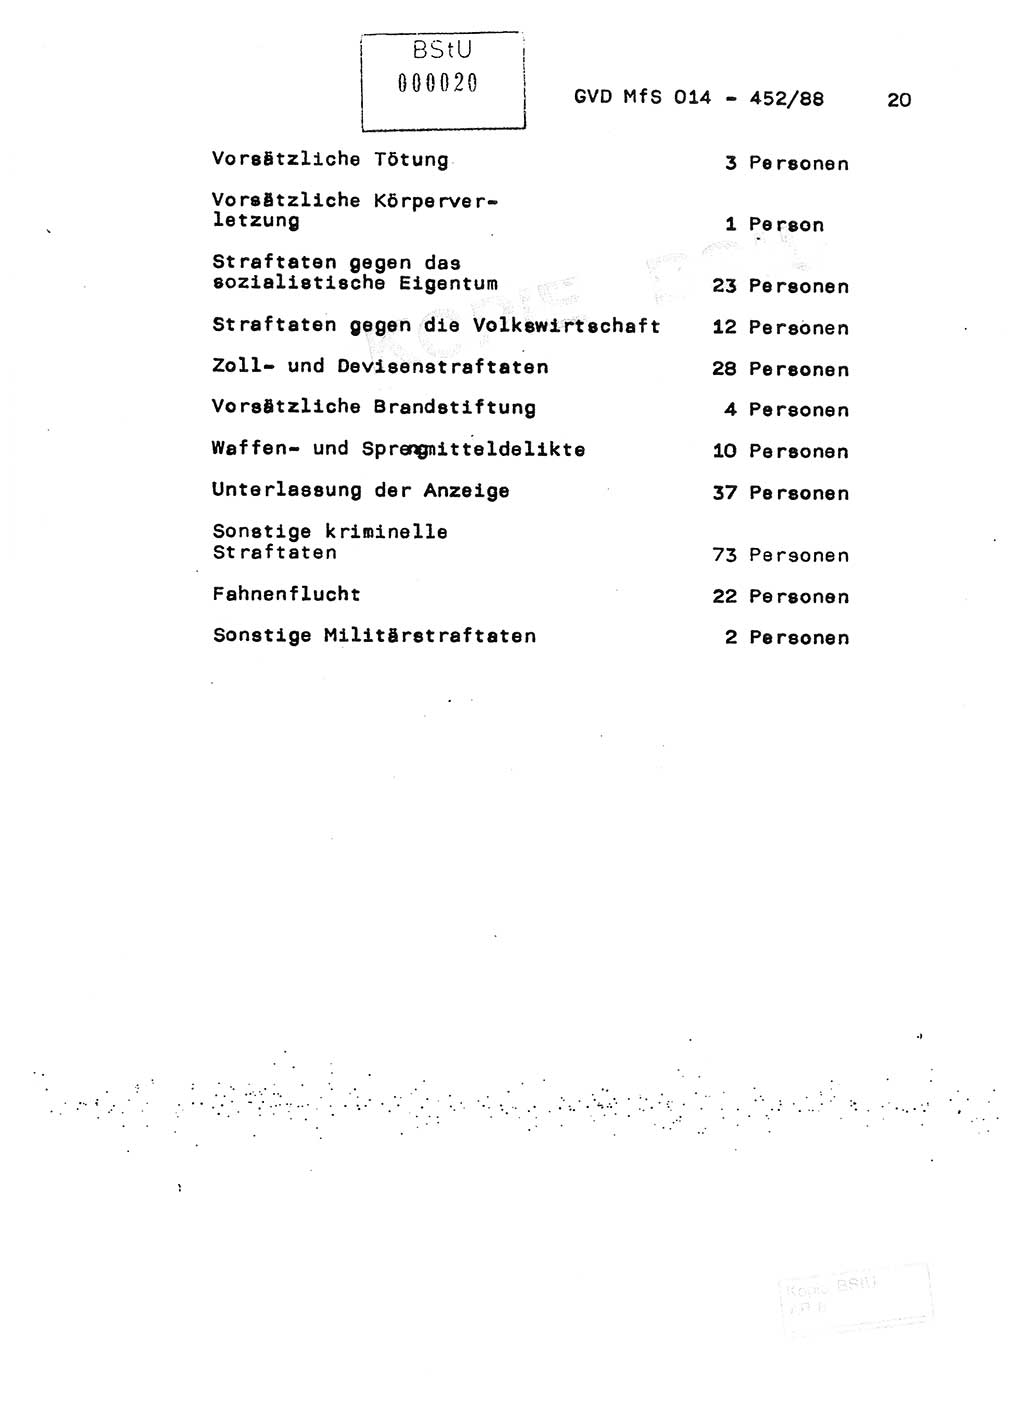 Jahresbericht der Hauptabteilung (HA) Ⅸ 1987, Einschätzung der Wirksamkeit der Untersuchungsarbeit im Jahre 1987, Ministerium für Staatssicherheit (MfS) der Deutschen Demokratischen Republik (DDR), Hauptabteilung Ⅸ, Geheime Verschlußsache (GVS) o014-452/88, Berlin 1988, Seite 20 (Einsch. MfS DDR HA Ⅸ GVS o014-452/88 1987, S. 20)